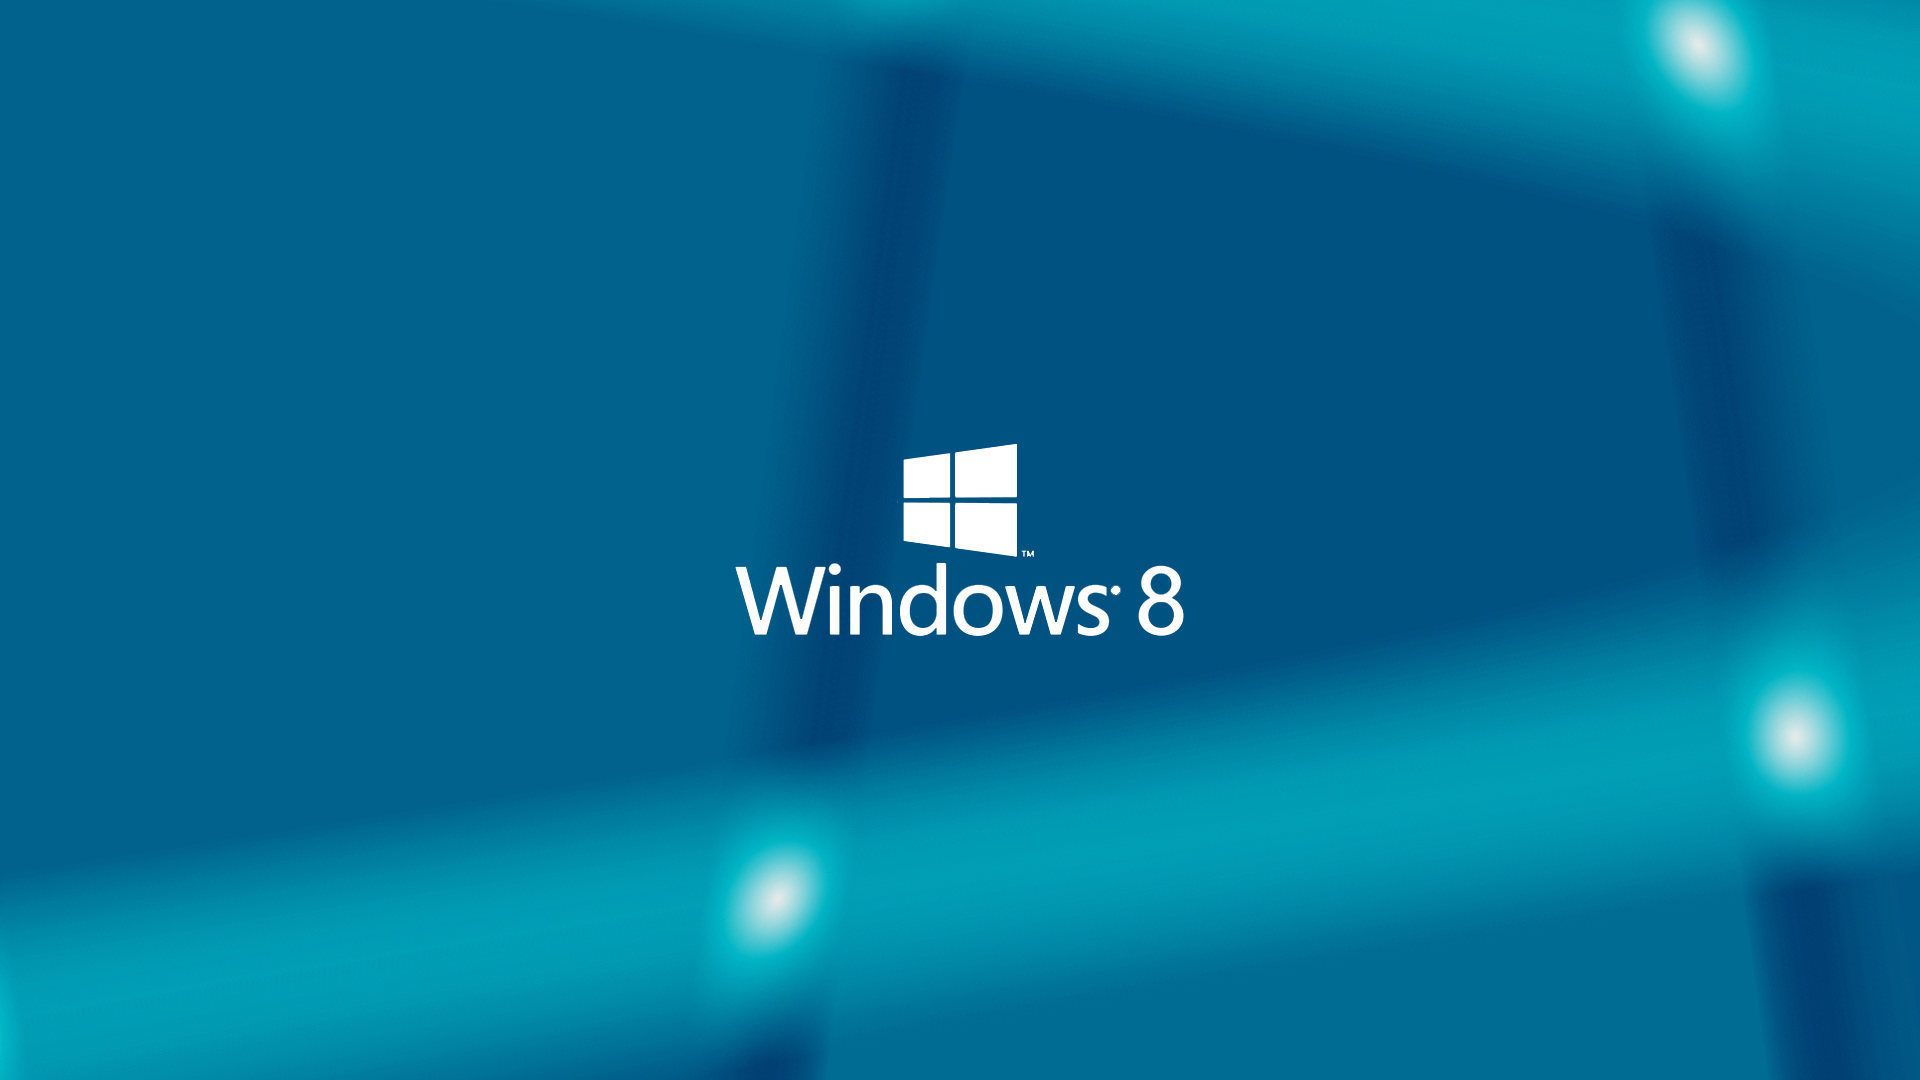 Để tìm kiếm cho mình một bức hình nền Windows 8 đẹp lung linh, hãy truy cập vào link tải về tại đây. Với hàng ngàn lựa chọn về hình nền với các chủ đề và phong cách khác nhau, bạn không thể bỏ qua cơ hội sở hữu những hình nền độc đáo và đẹp mắt này.